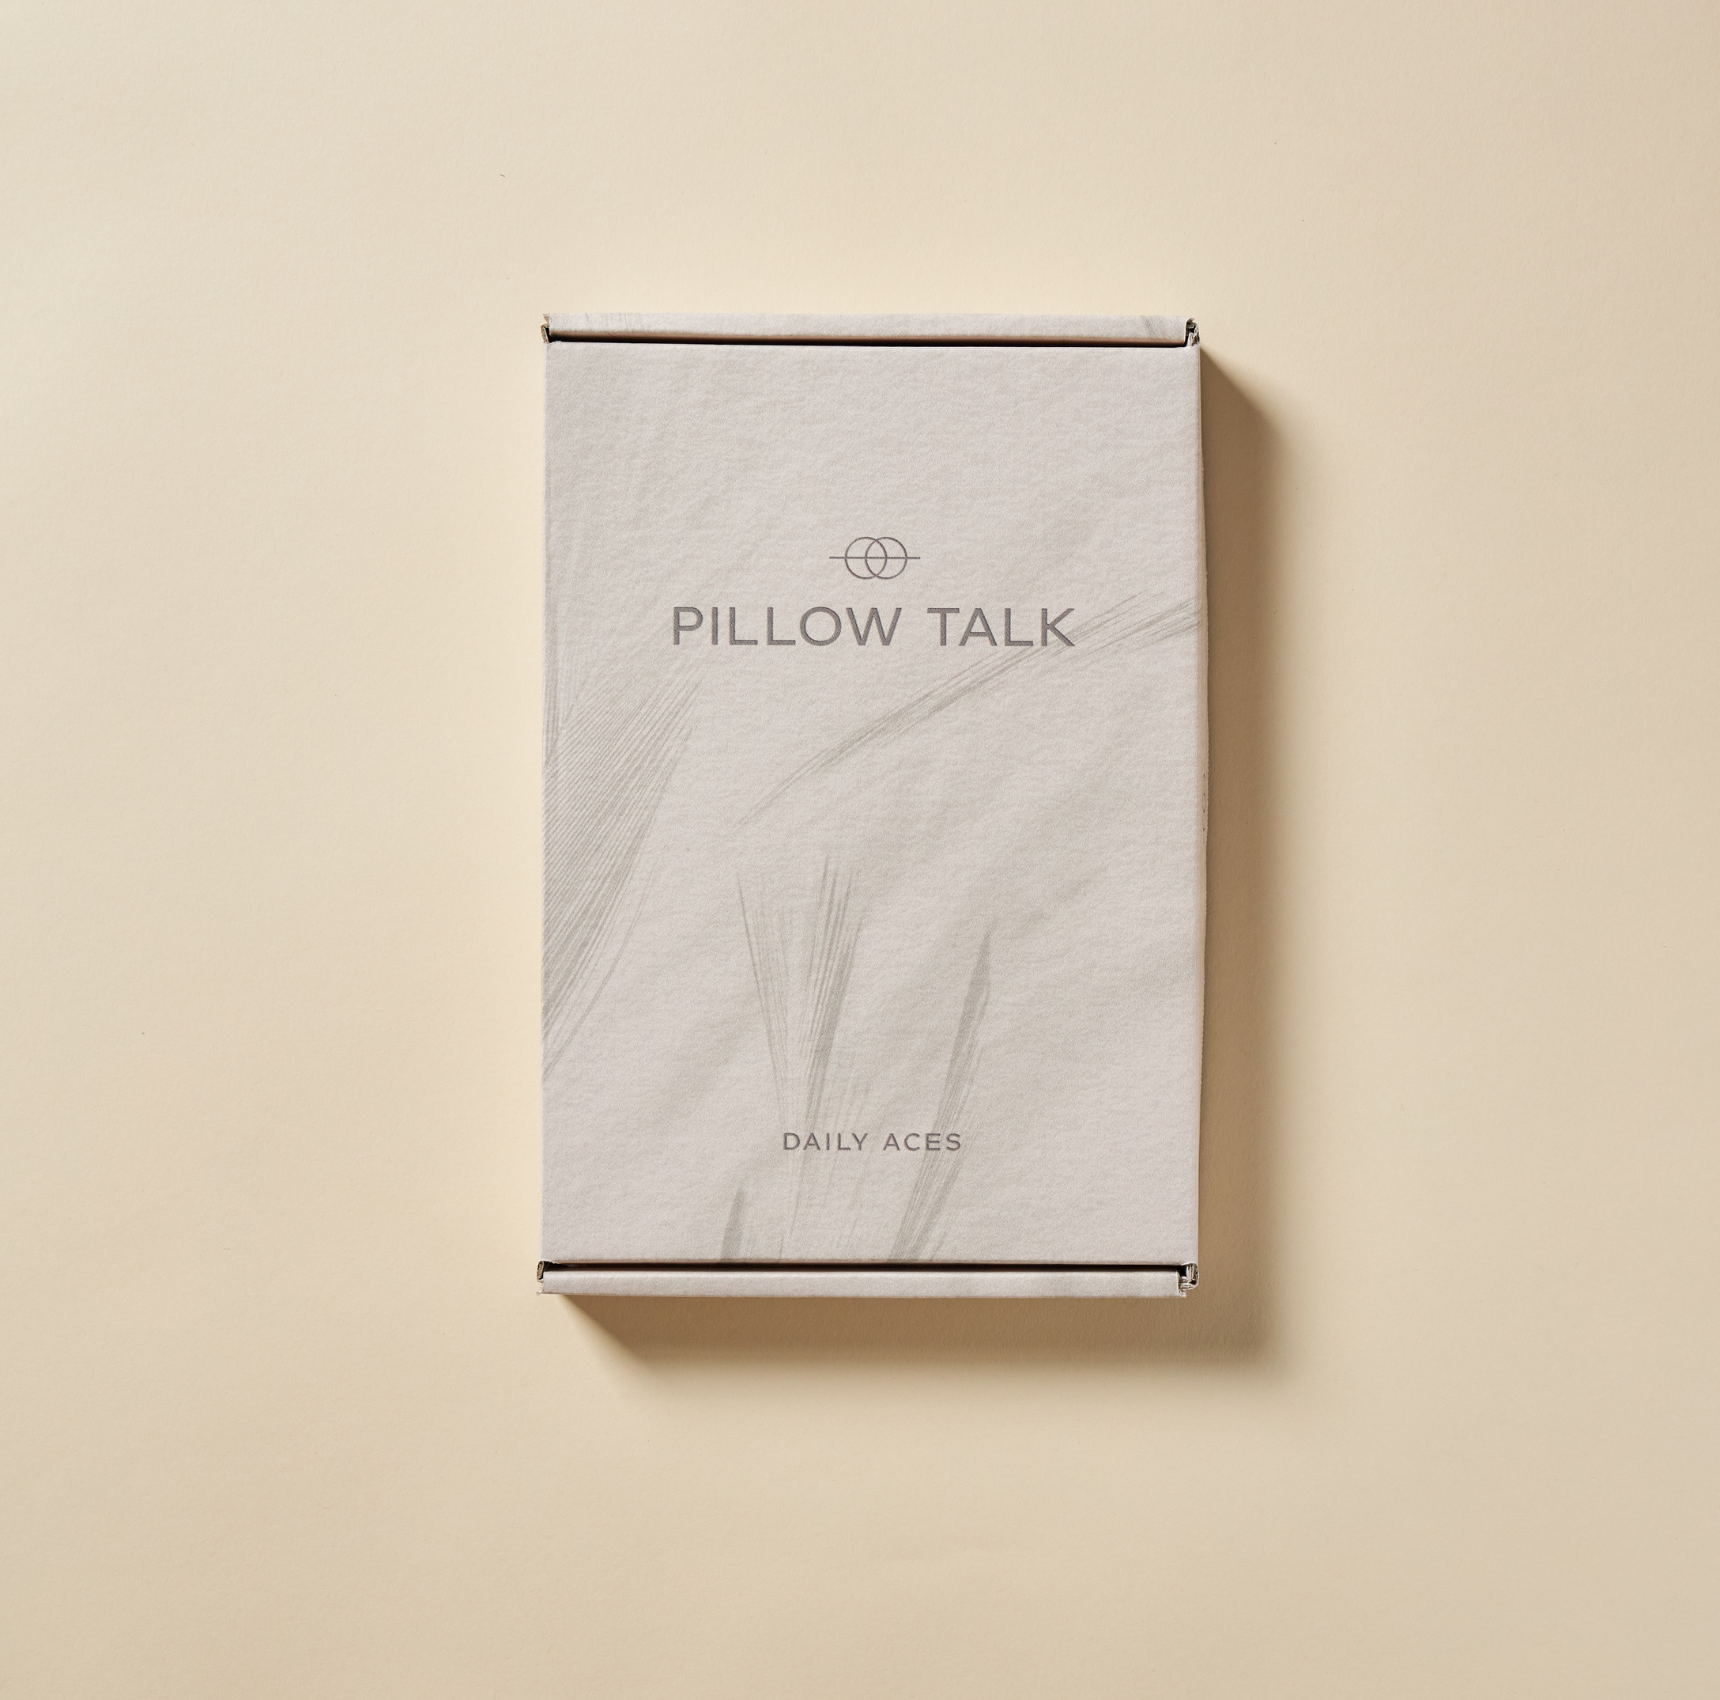 PILLOW TALK met parfum pouch & sample